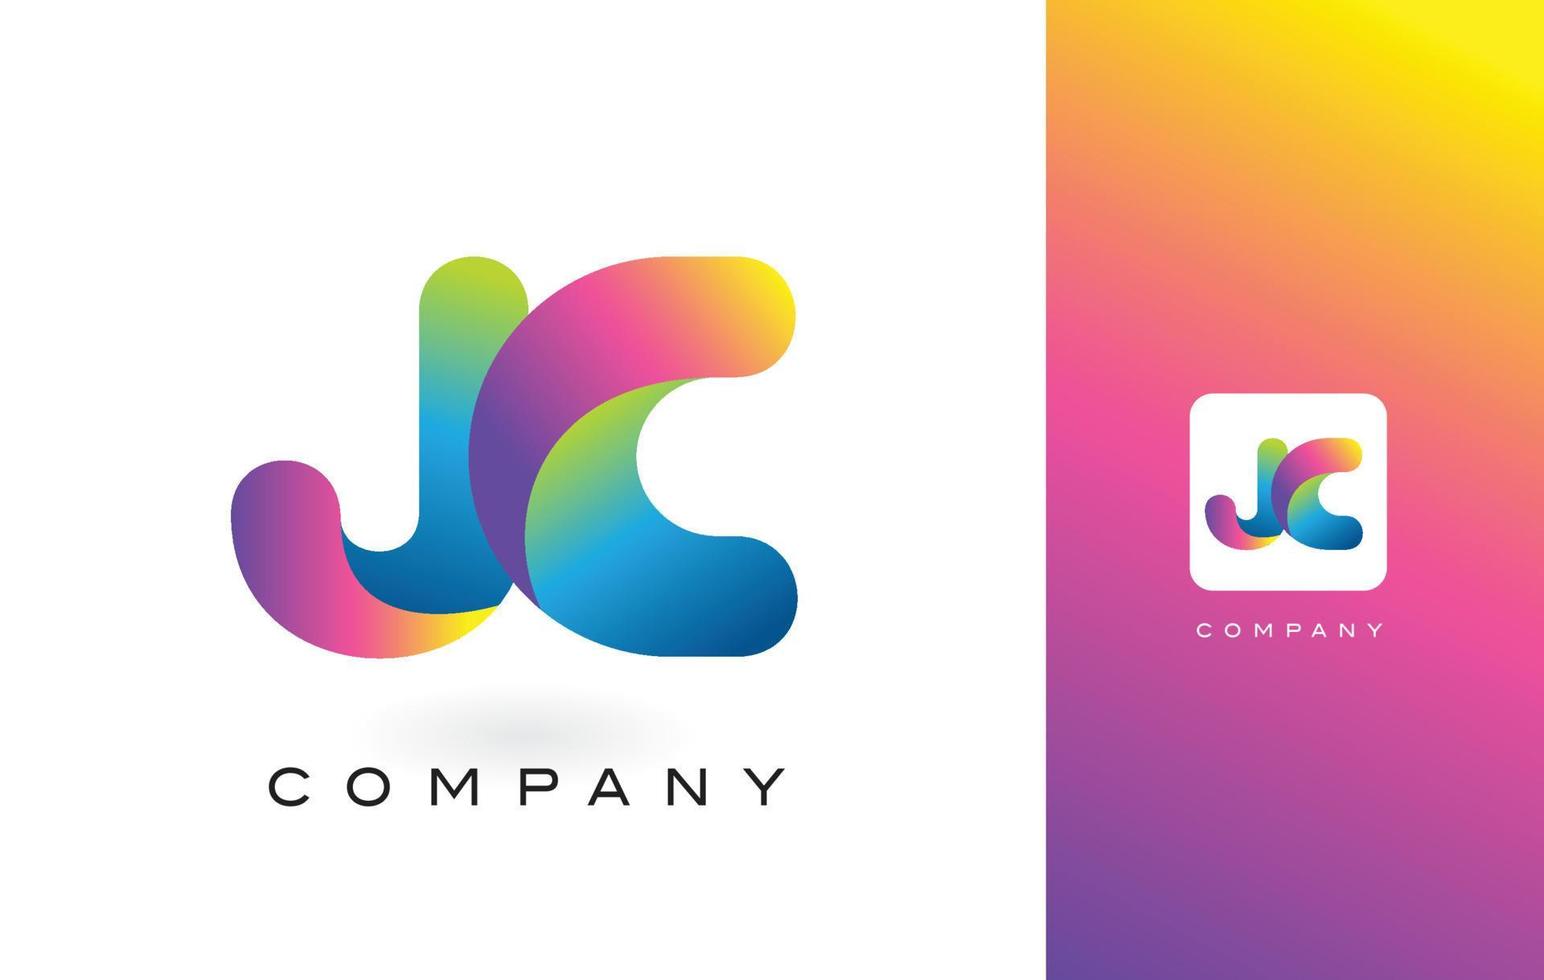 lettera logo jc con colori vivaci e belli dell'arcobaleno. vettore di lettere colorate viola e magenta alla moda.